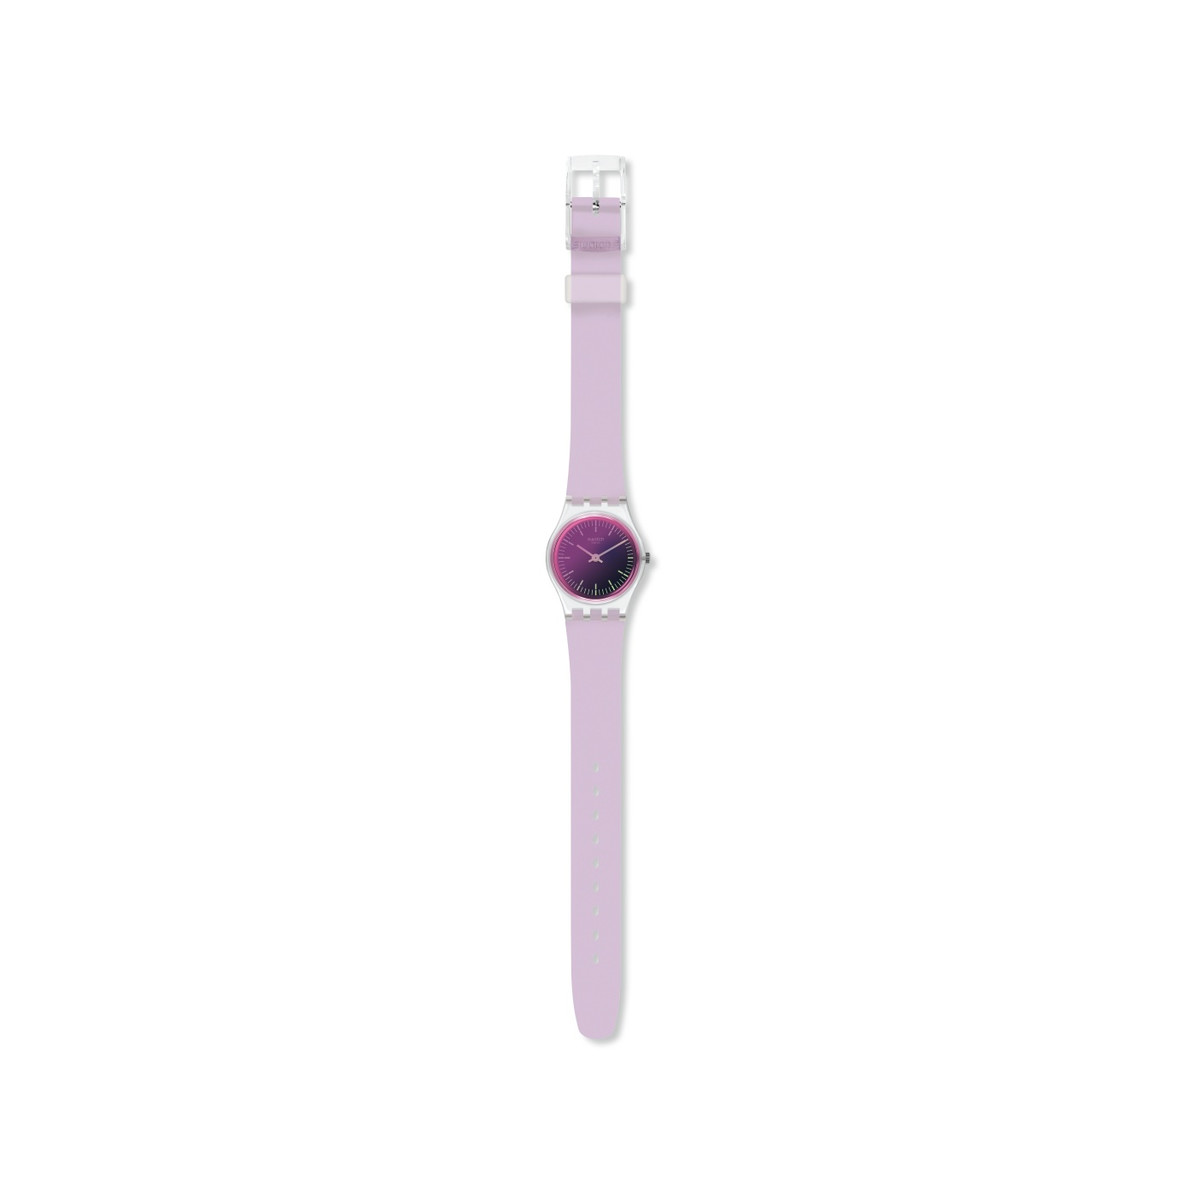 Montre Swatch mixte plastique silicone violet - vue 2